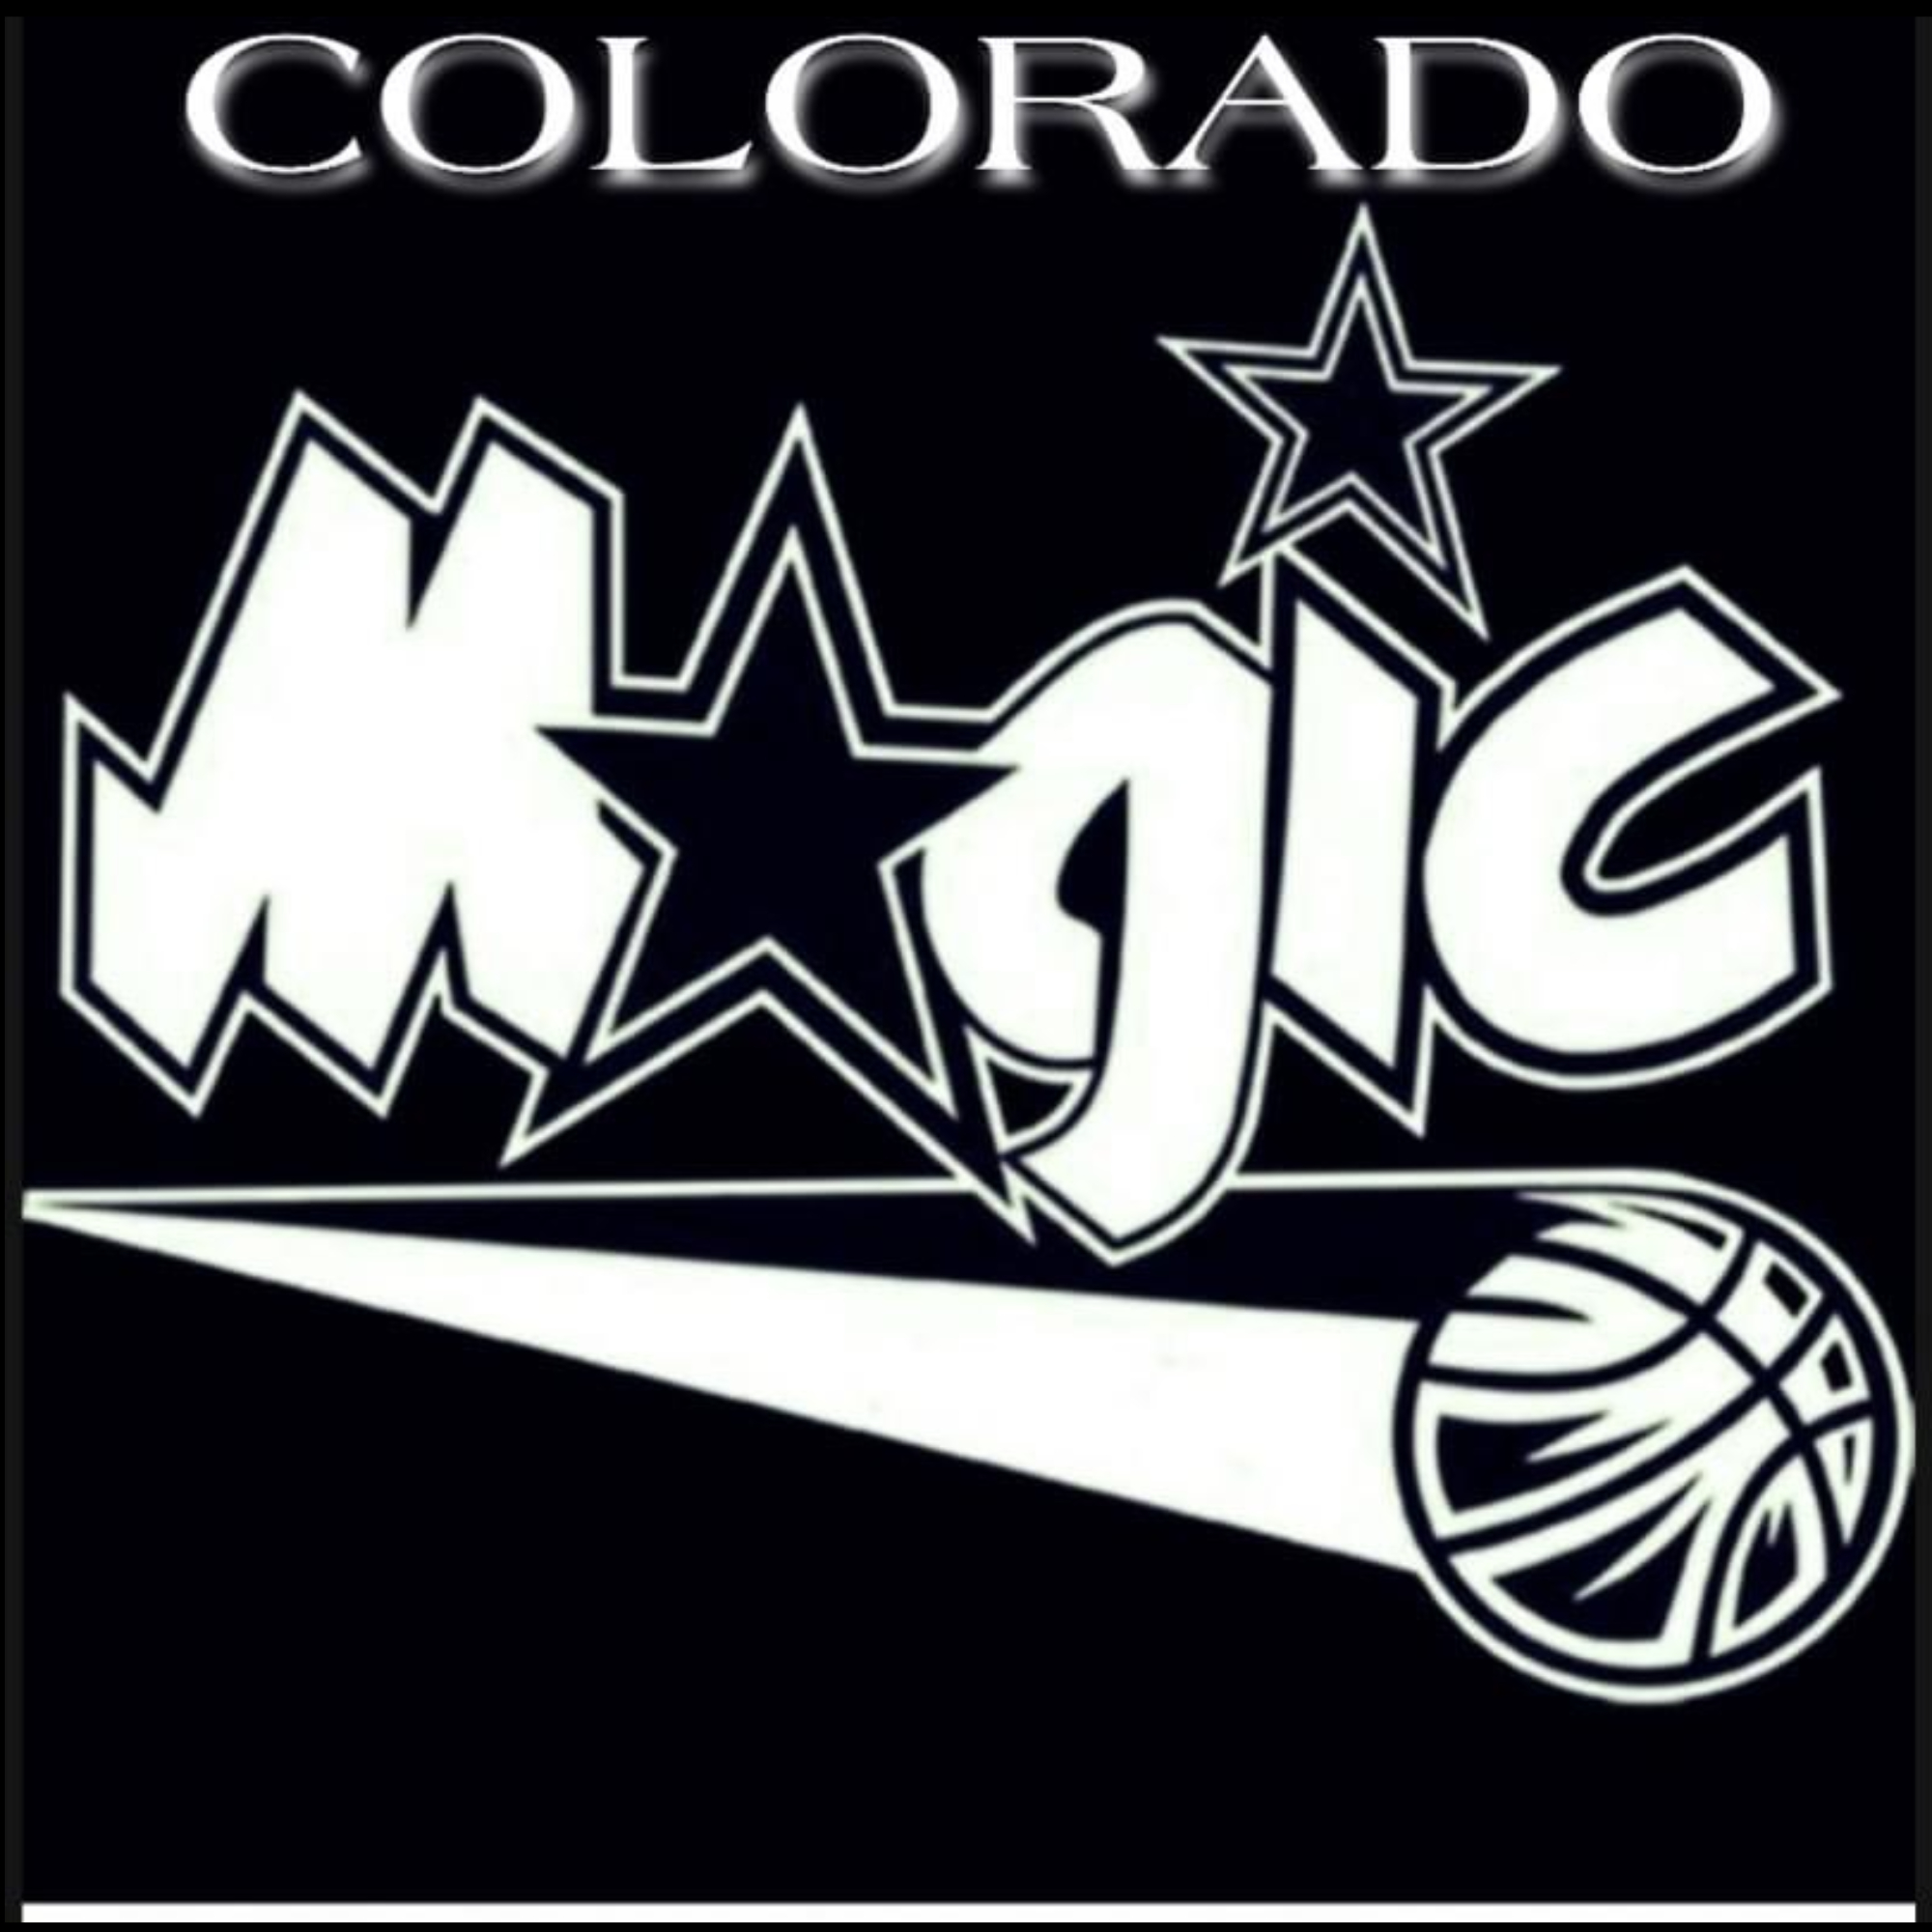 The official logo of Colorado Magic